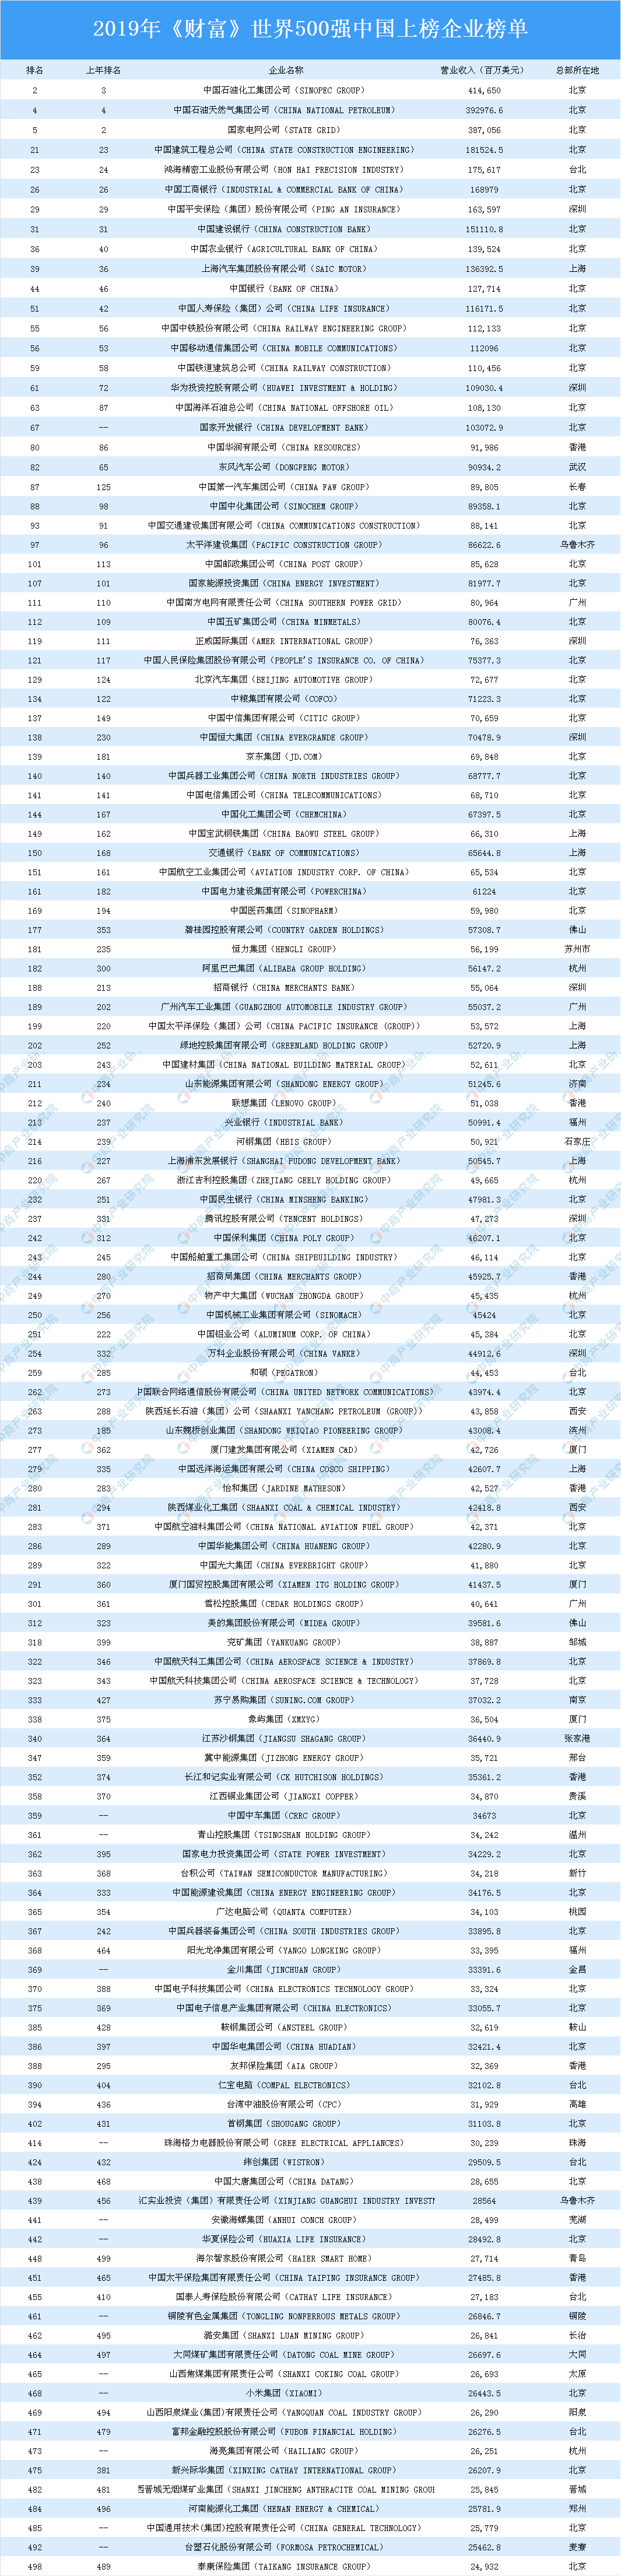 2019年《财富》世界500强中国上榜企业:中国石化位居榜首(附全榜单)